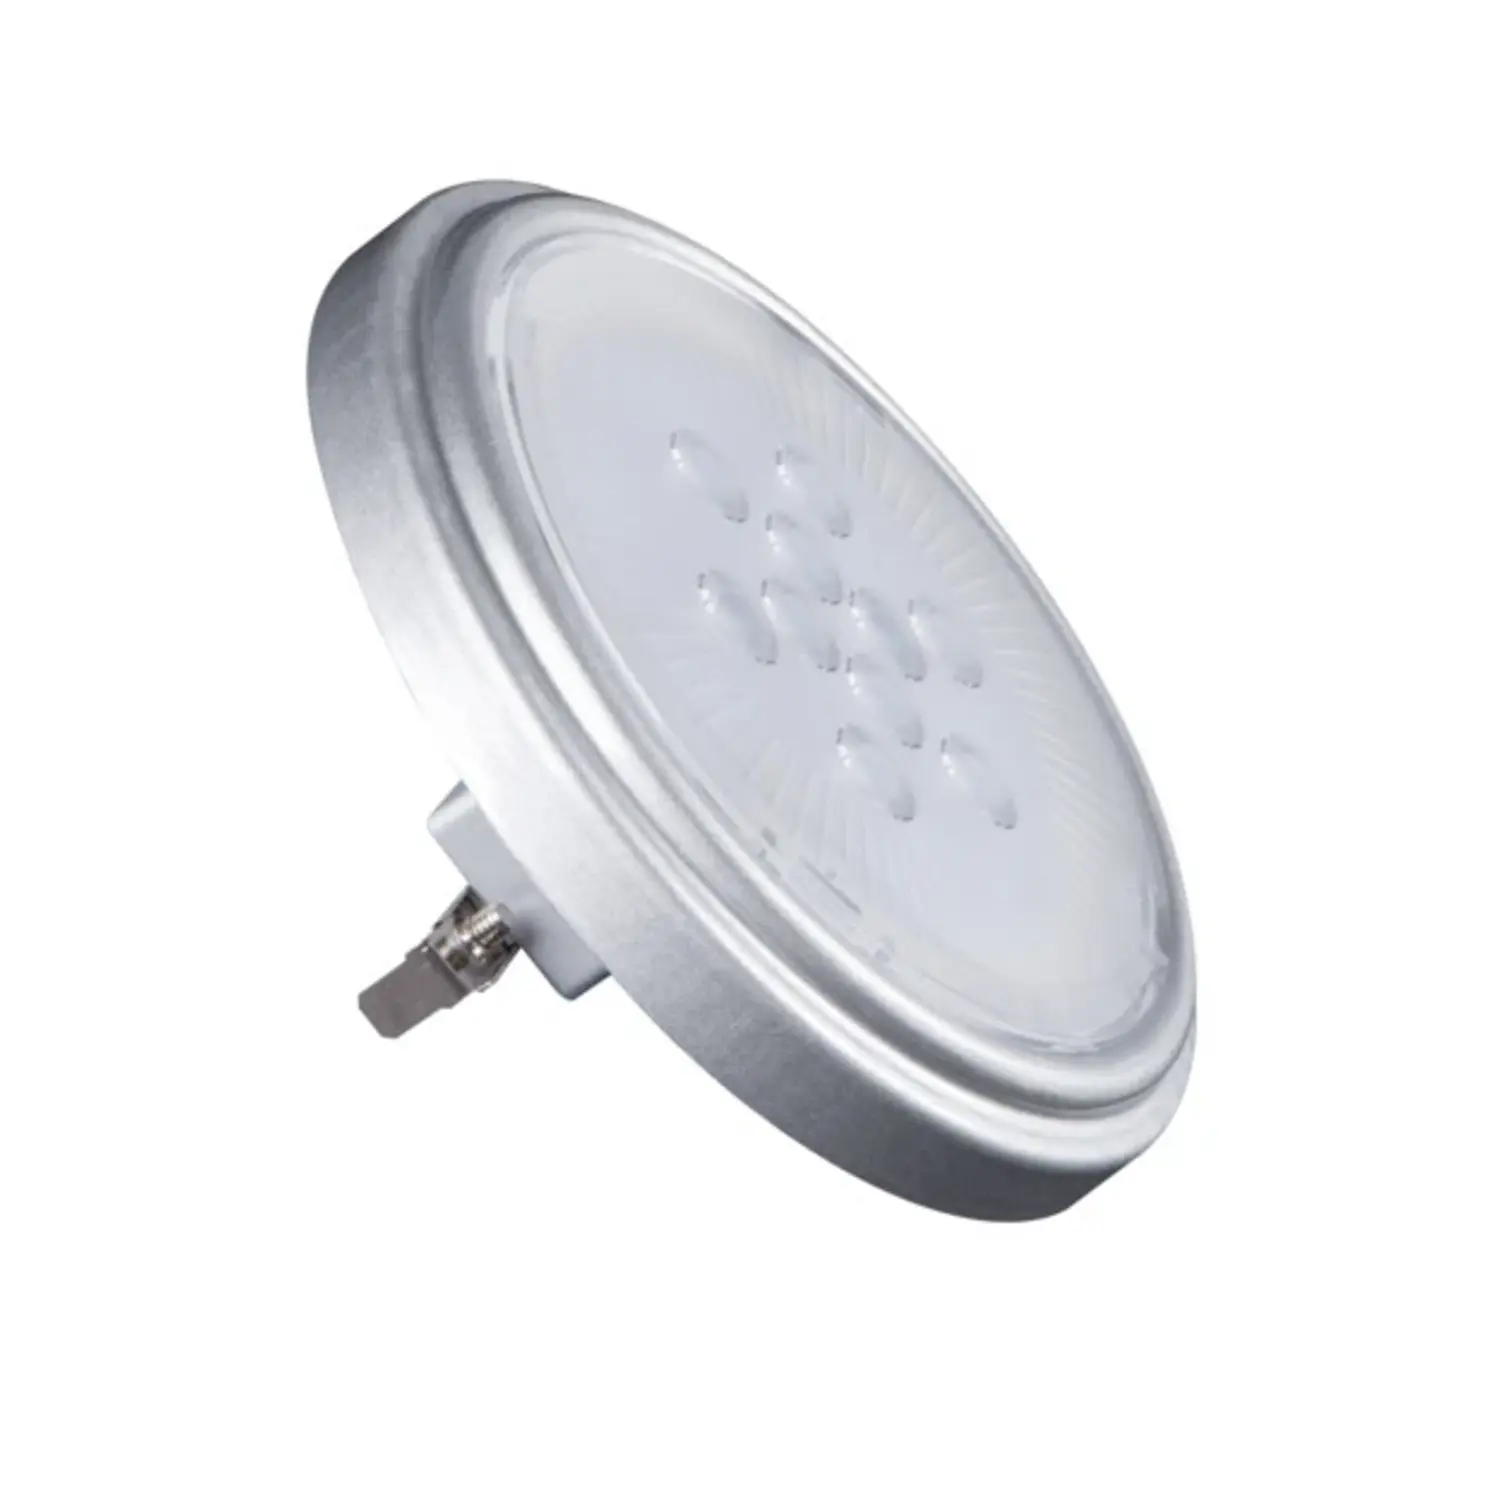 immagine del prodotto lampadina a led dc 11 watt grigio G53 AR111 CE bianco freddo 40° 25000 ore 12 volt kan 22963